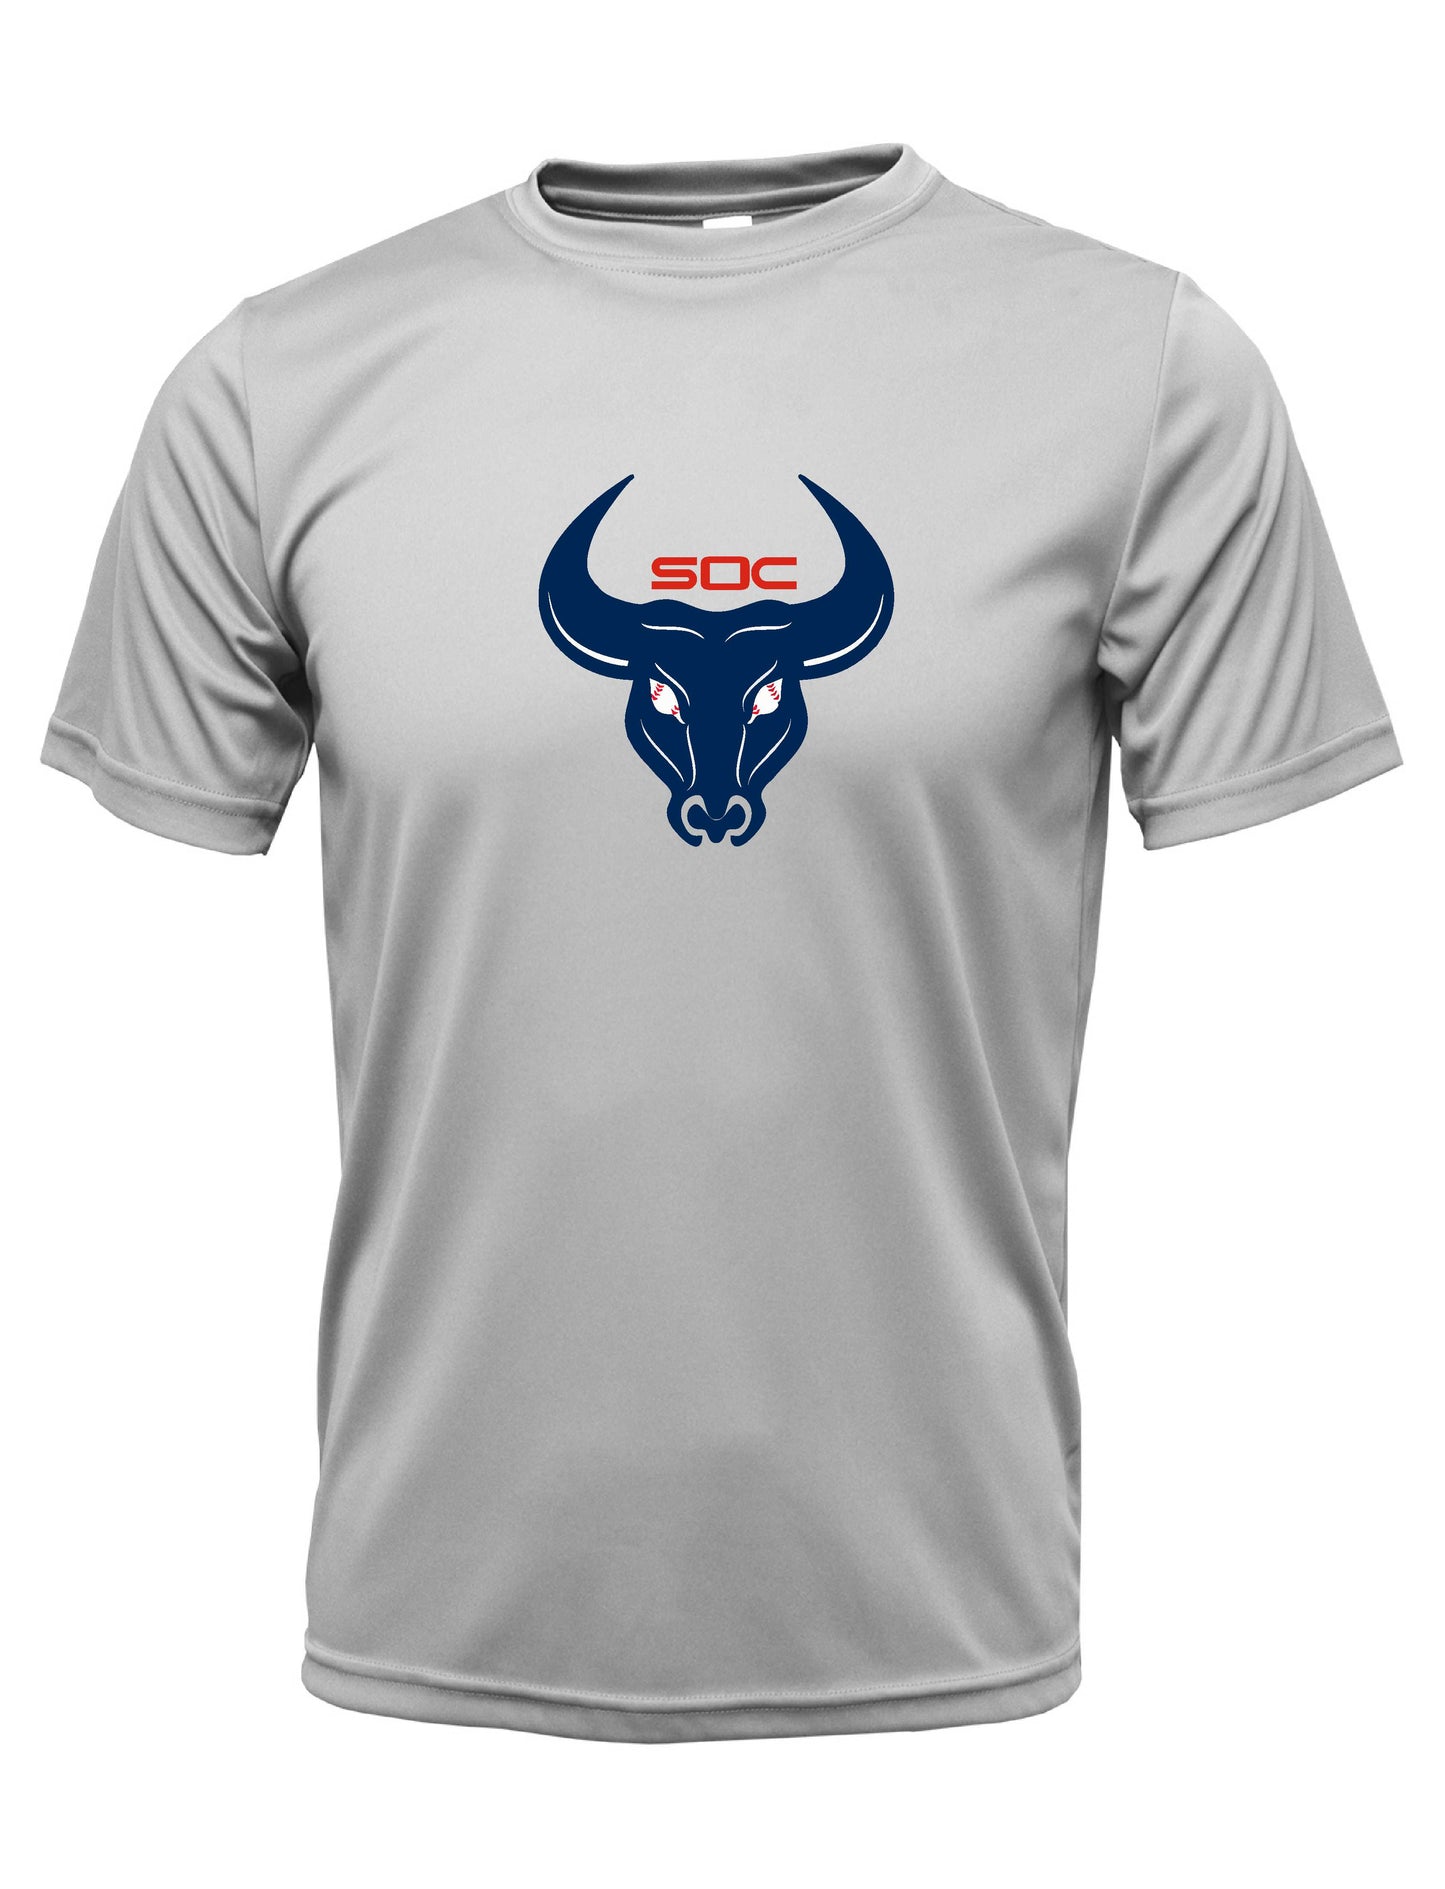 SC "Bull logo" Dri-fit T-shirt